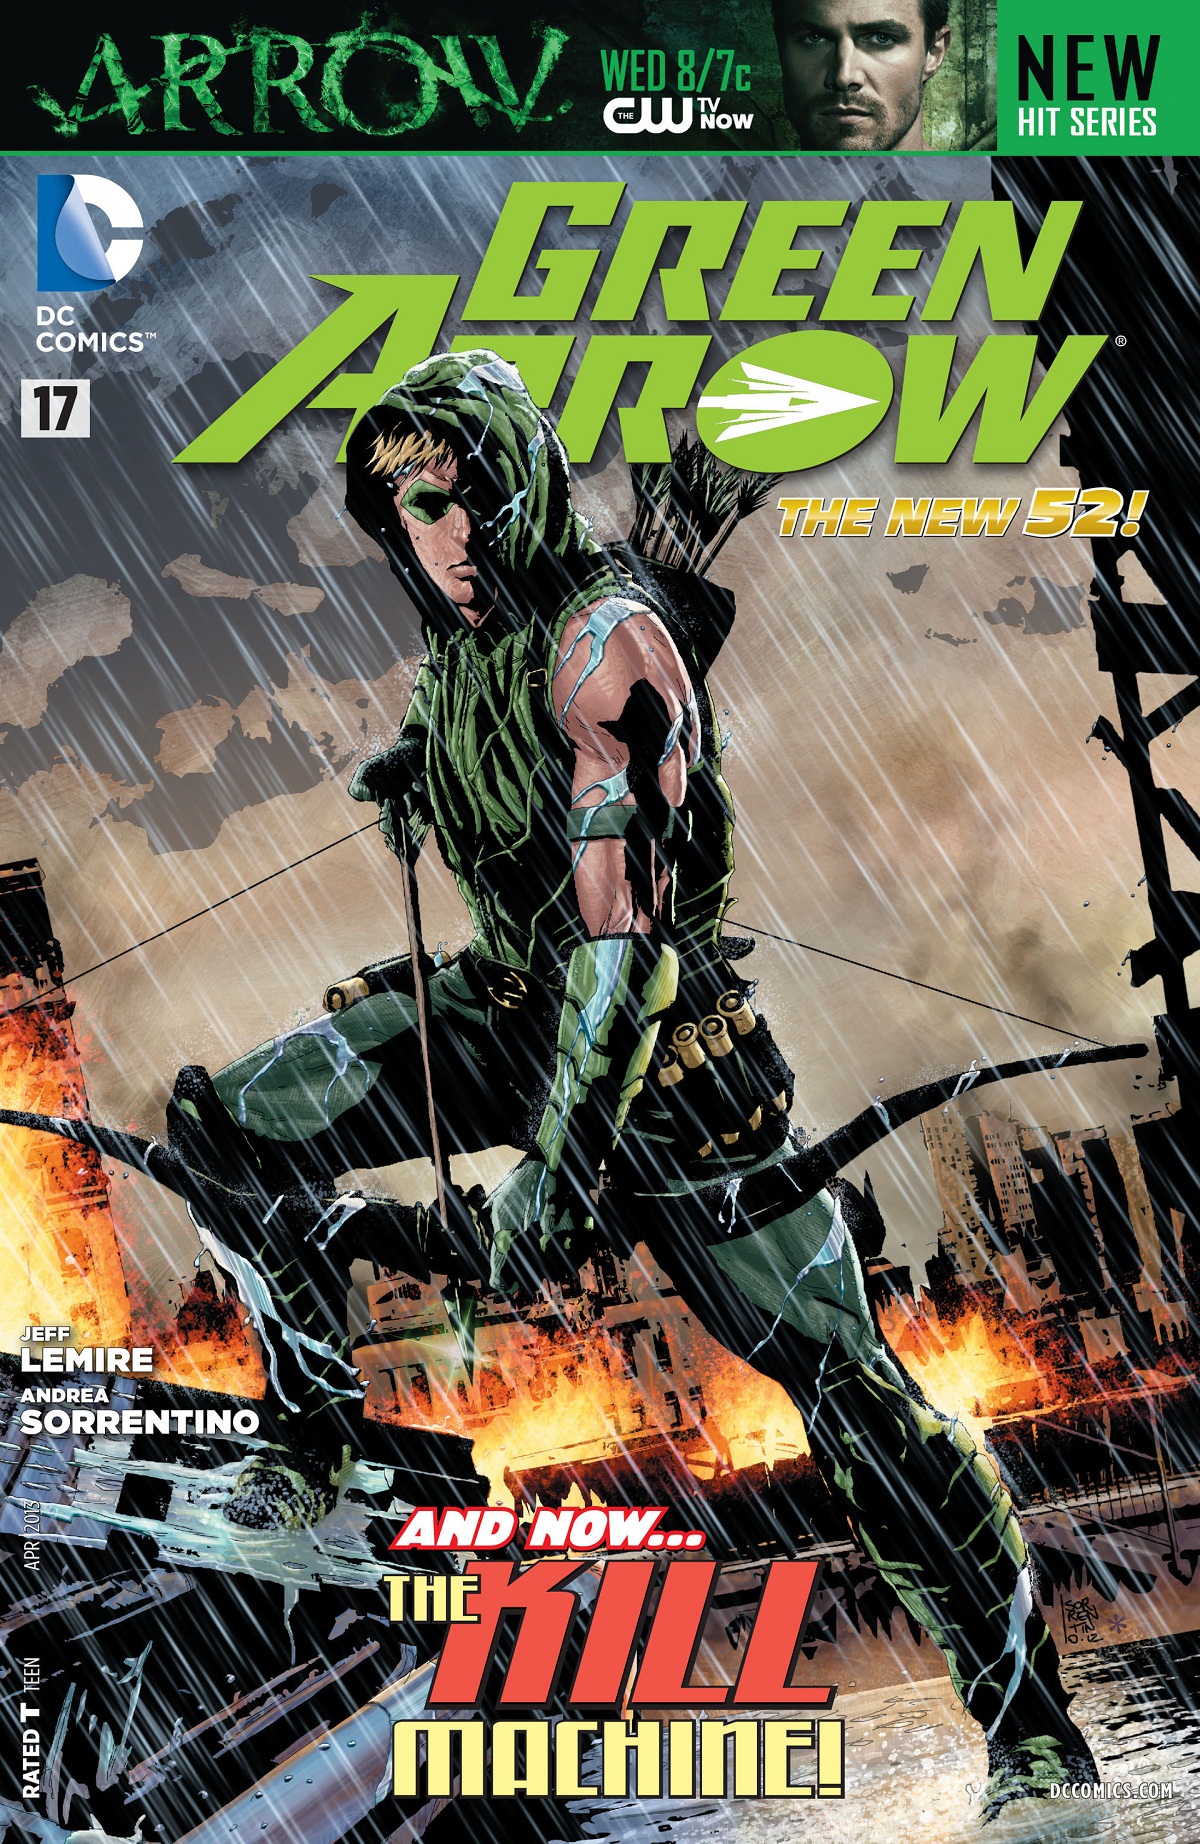 Green Arrow Vol. 5 #17